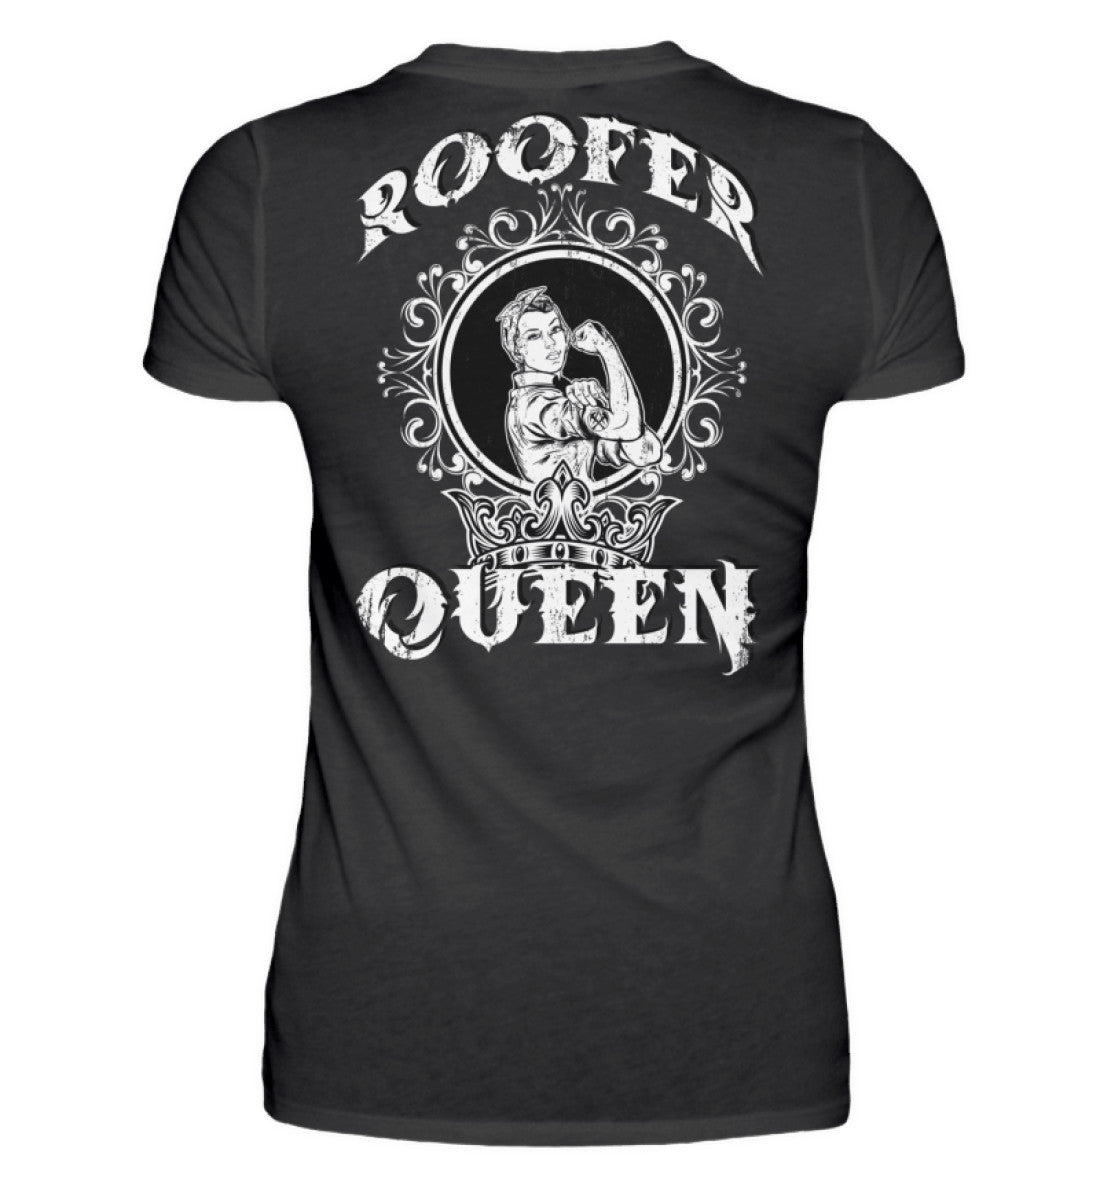 Roofer Queen Version 1.0  - Damen Premiumshirt €29.95 Rooferking